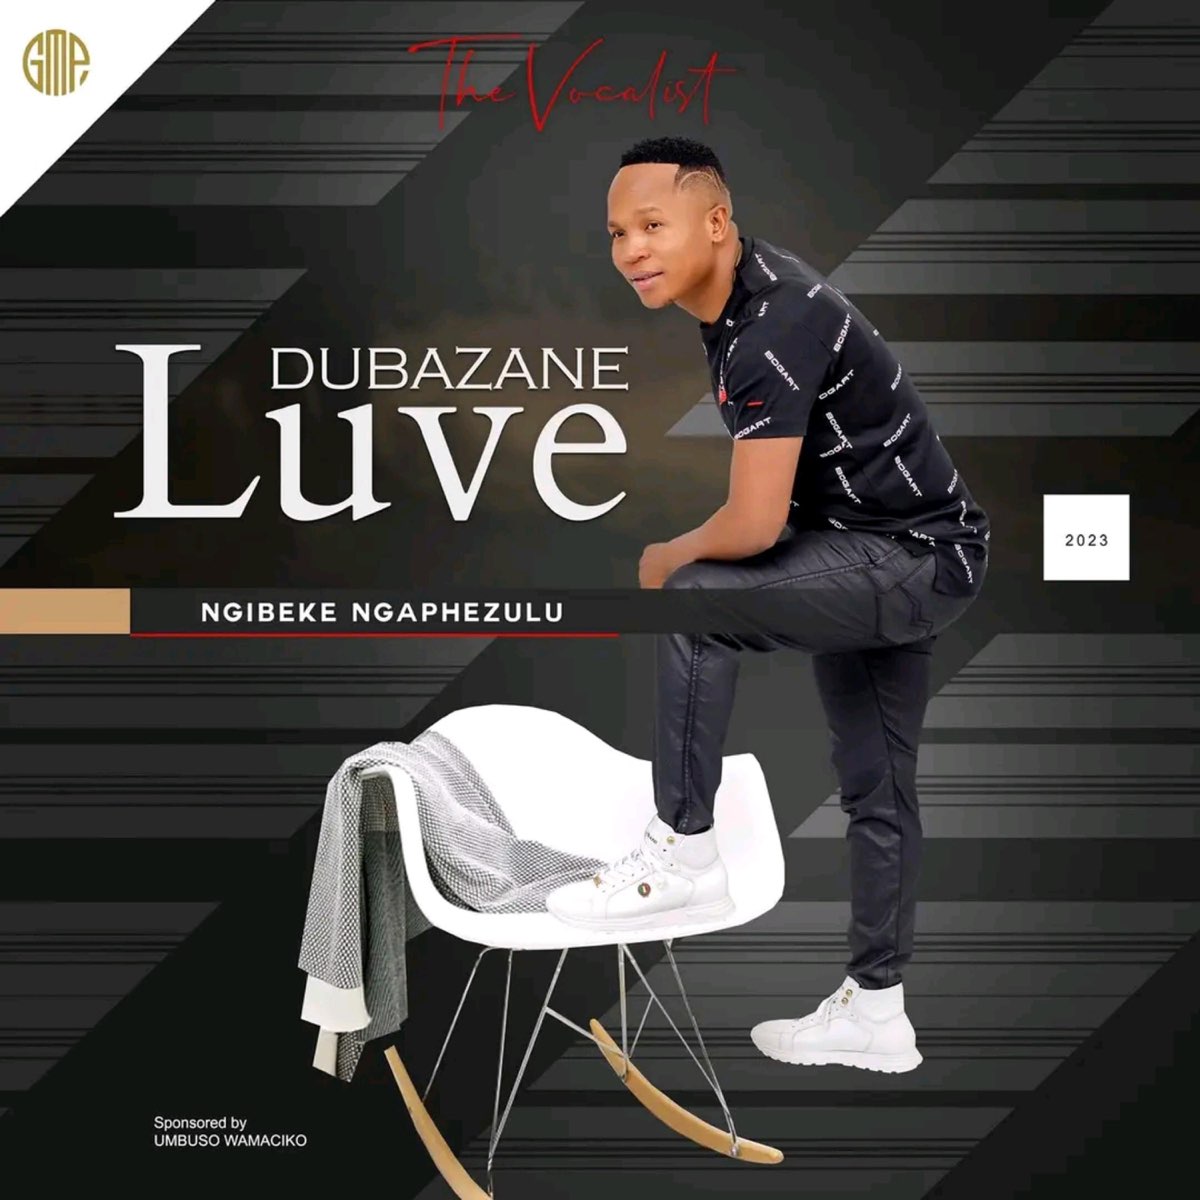 Ngibeke Ngaphezulu by Luve Dubazane | Album